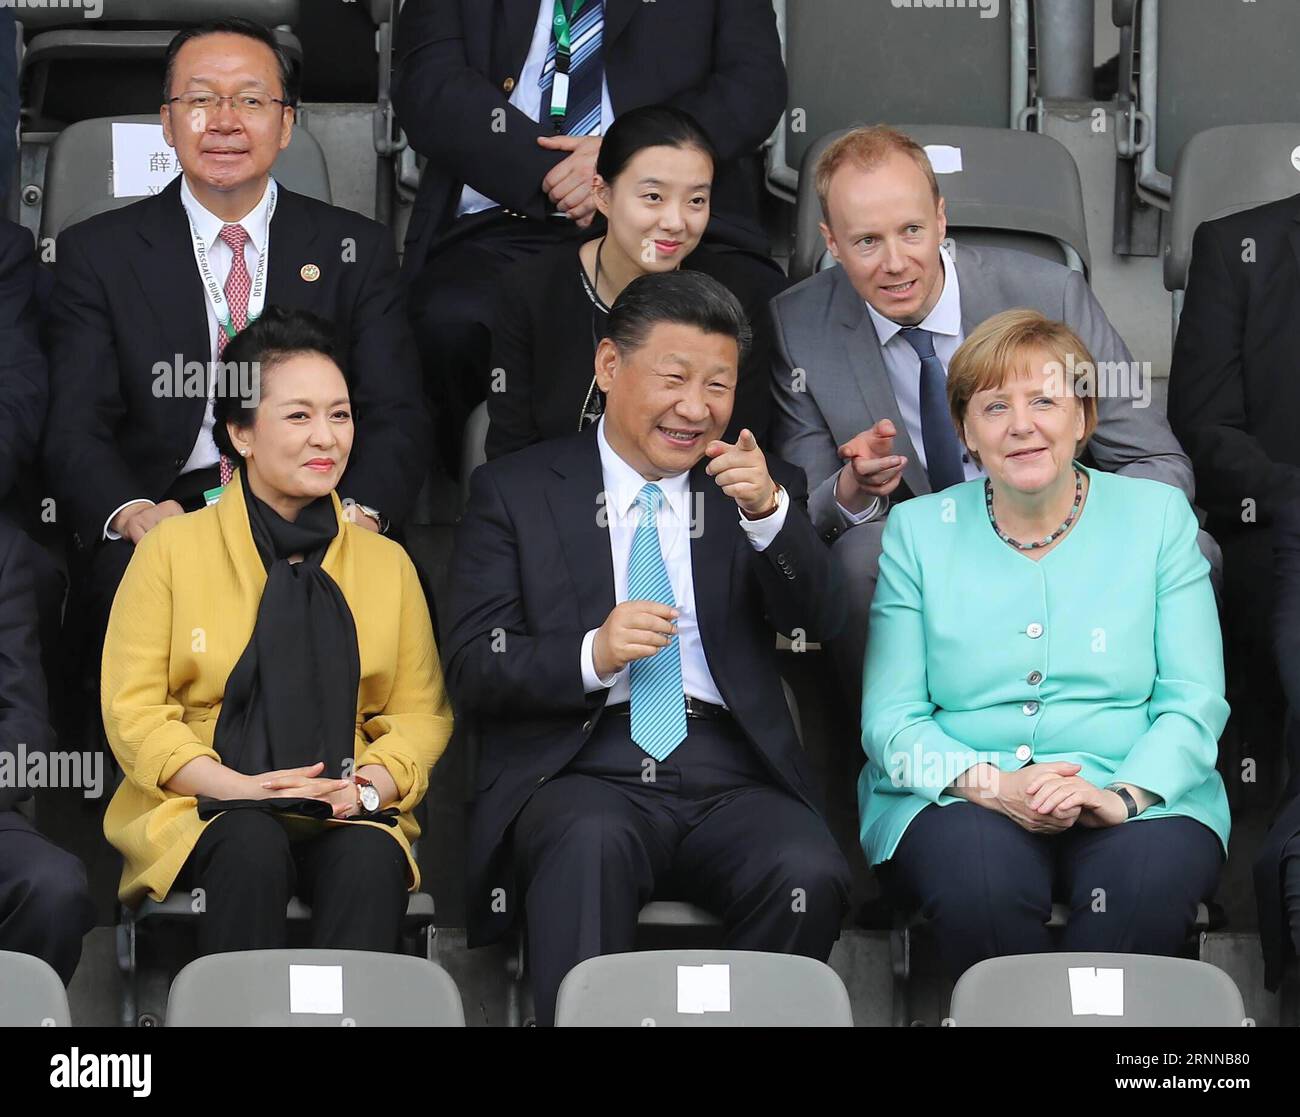 (170705) -- BERLIN, 5 juillet 2017 -- le président chinois Xi Jinping (C, avant), son épouse Peng Liyuan (L, avant) et la chancelière allemande Angela Merkel (R, avant) regardent un match amical de football entre les équipes de jeunes chinoises et allemandes à Berlin, capitale de l'Allemagne, le 5 juillet 2017. (Lb) GERMANY-CHINA-XI JINPING-MERKEL-YOUTH MATCH WangxYe PUBLICATIONxNOTxINxCHN Berlin juillet 5 2017 le président chinois Xi Jinping C devant son épouse Peng Liyuan l et la chancelière allemande Angela Merkel r avant de regarder un match amical de football entre les équipes de jeunes chinoises et allemandes à Berlin capitale de l'Allemagne le 5 juillet Banque D'Images